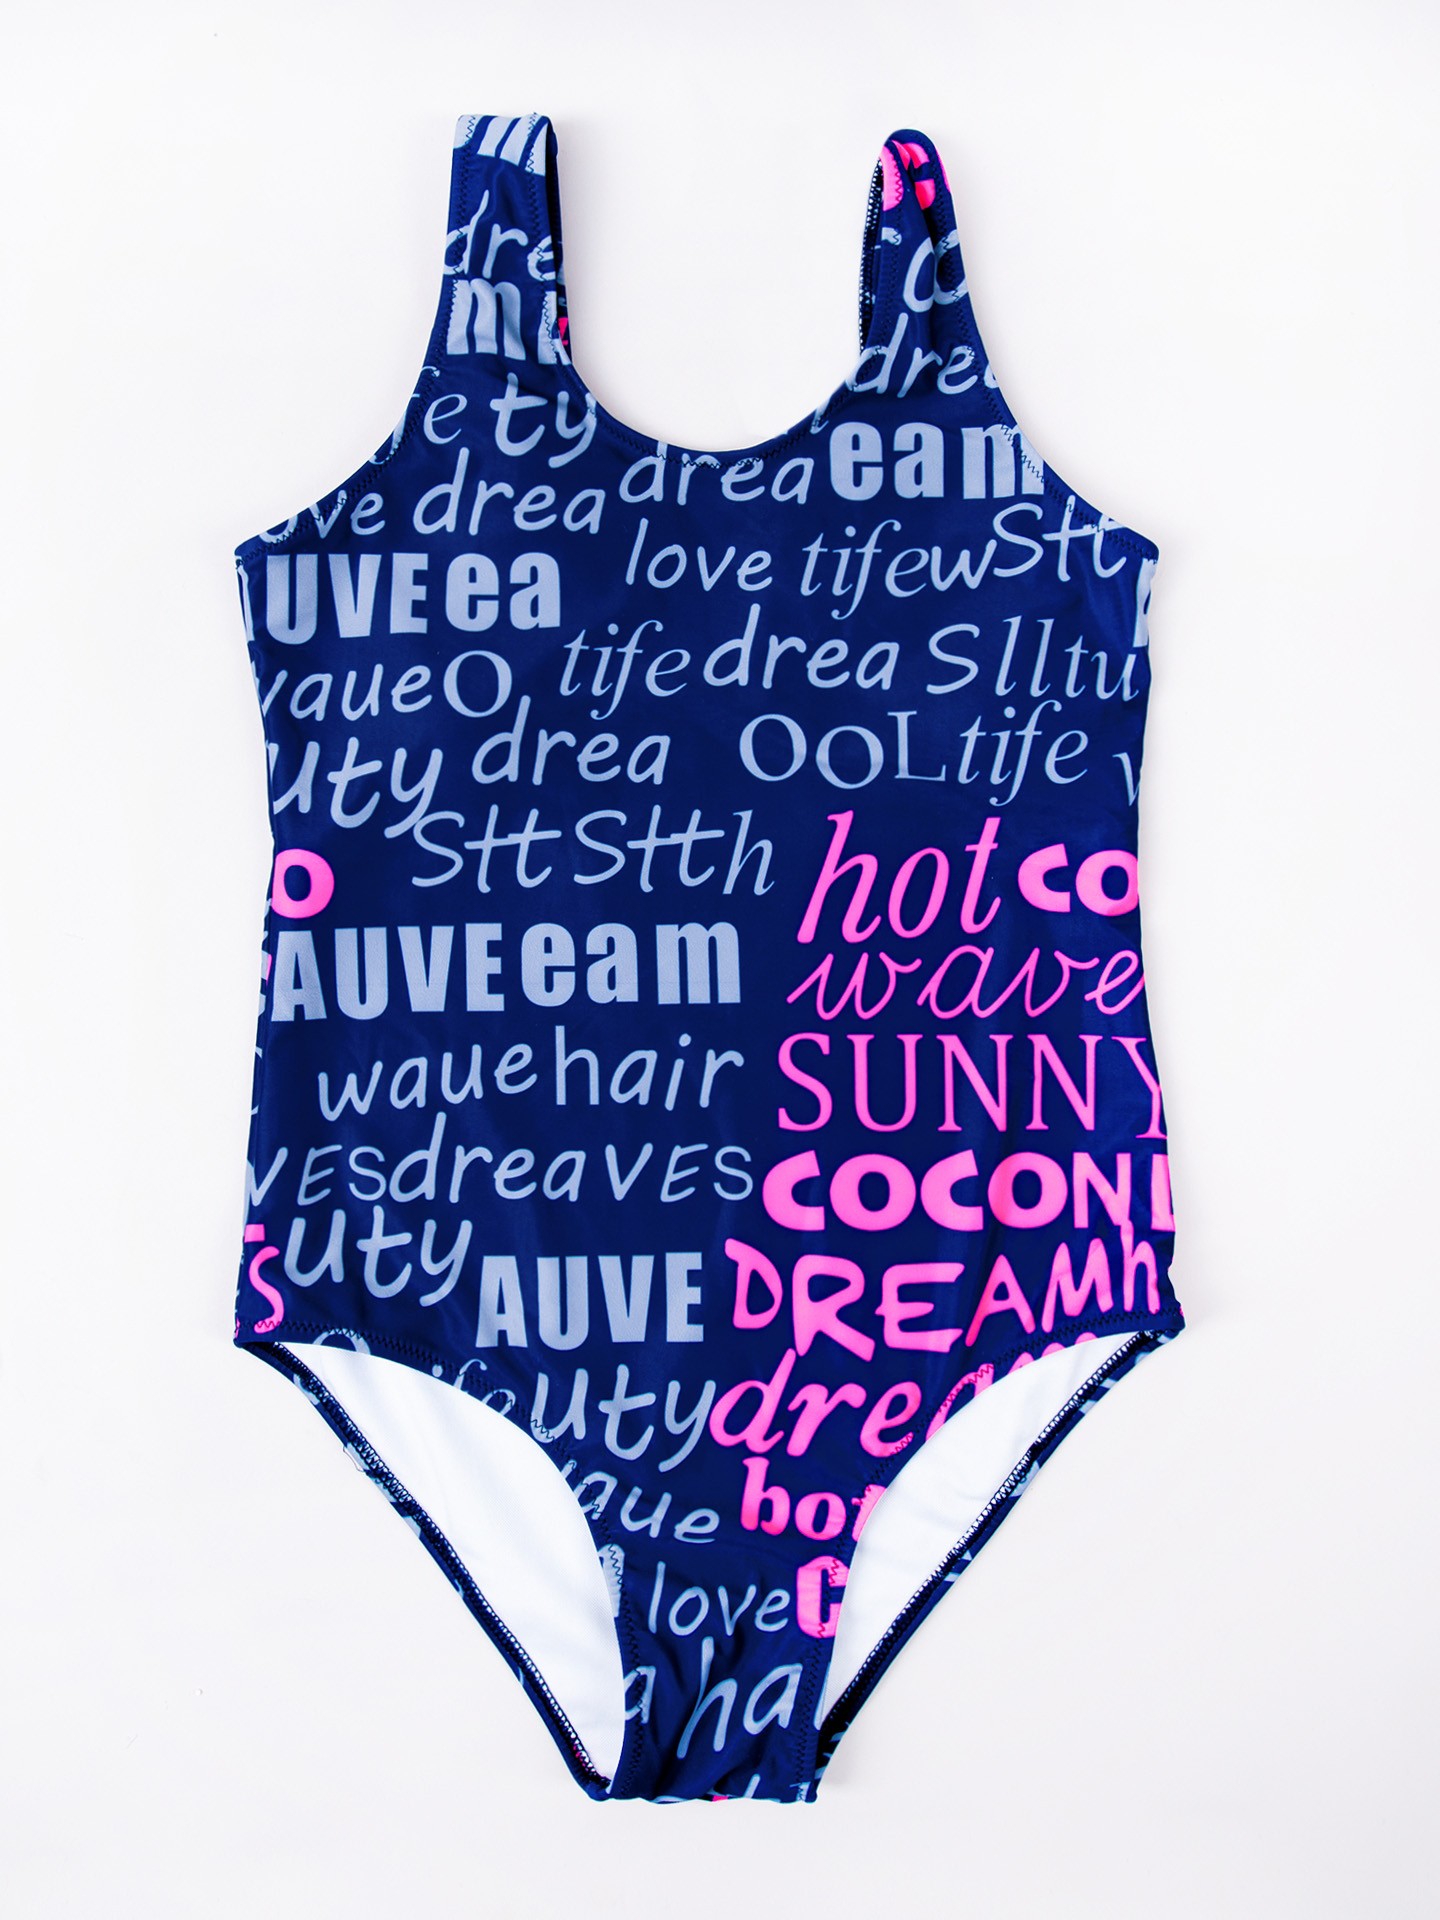 Dievčenské oblečenie Yoclub YC_Girl's_One_Piece_Swimming_Costume_LKJ-0030G-A100_N_Blue